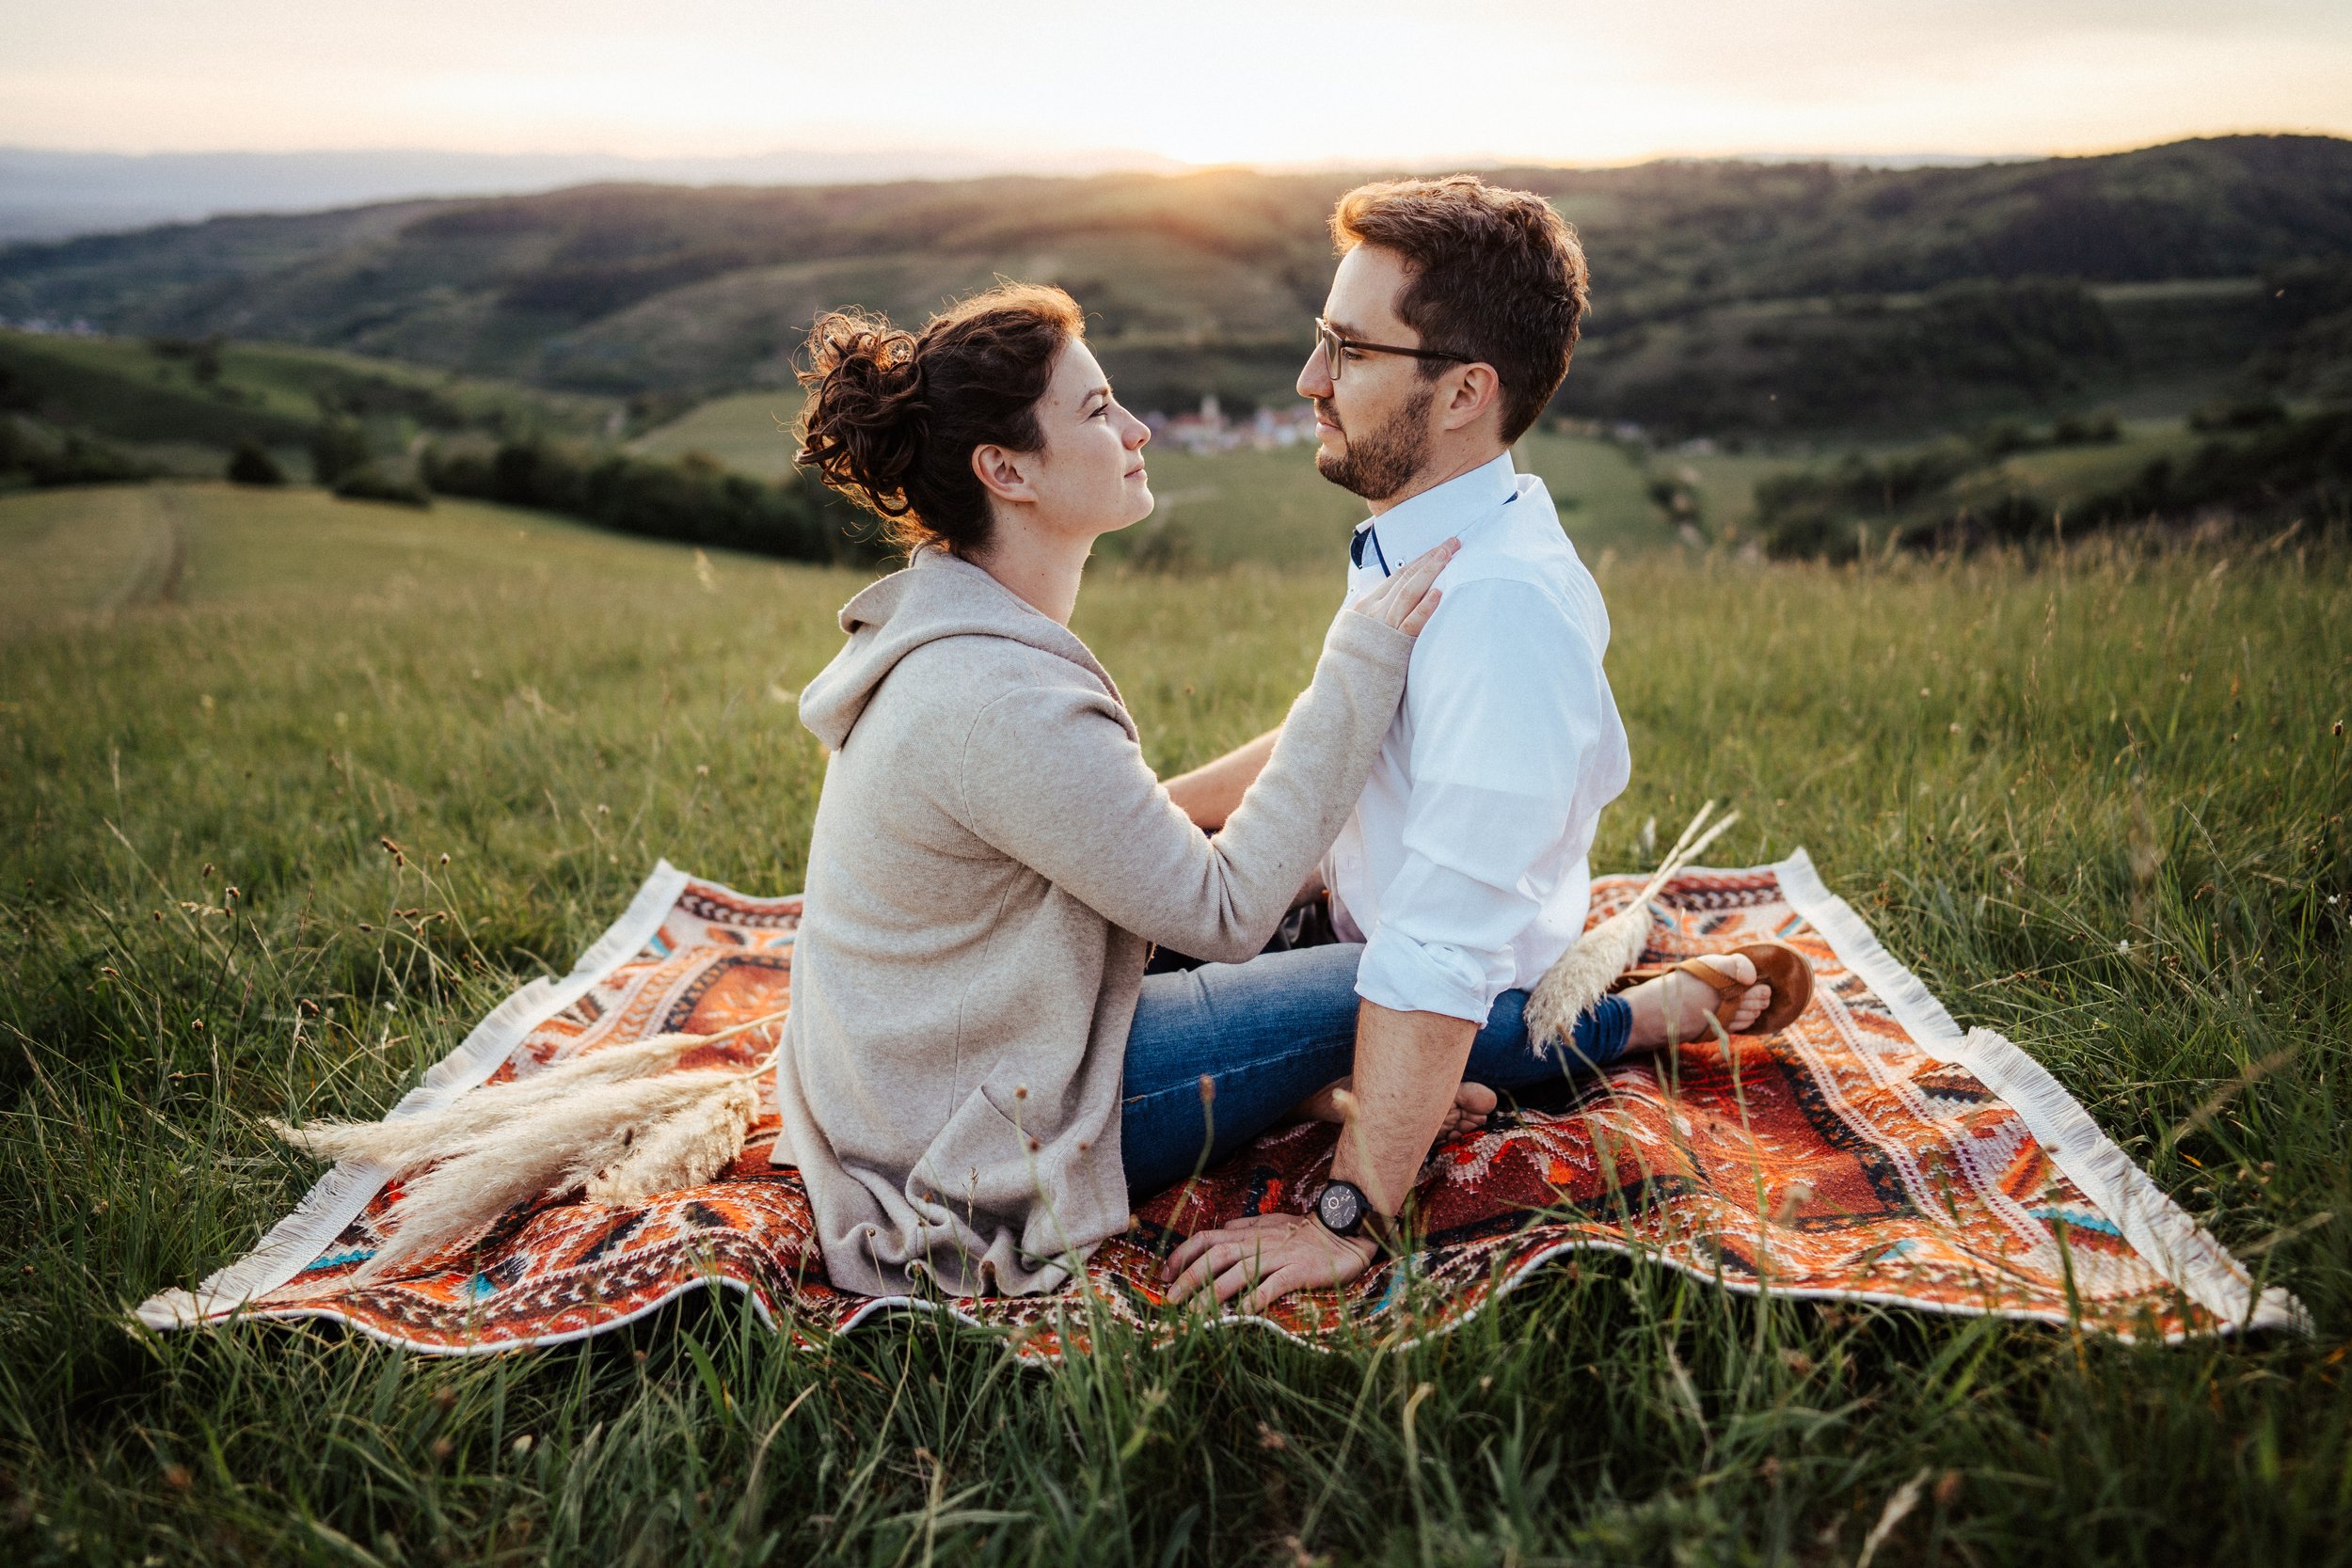 Romantisches Paarshooting: Paar auf einem Teppich in der Wiese bei Sonnenuntergang